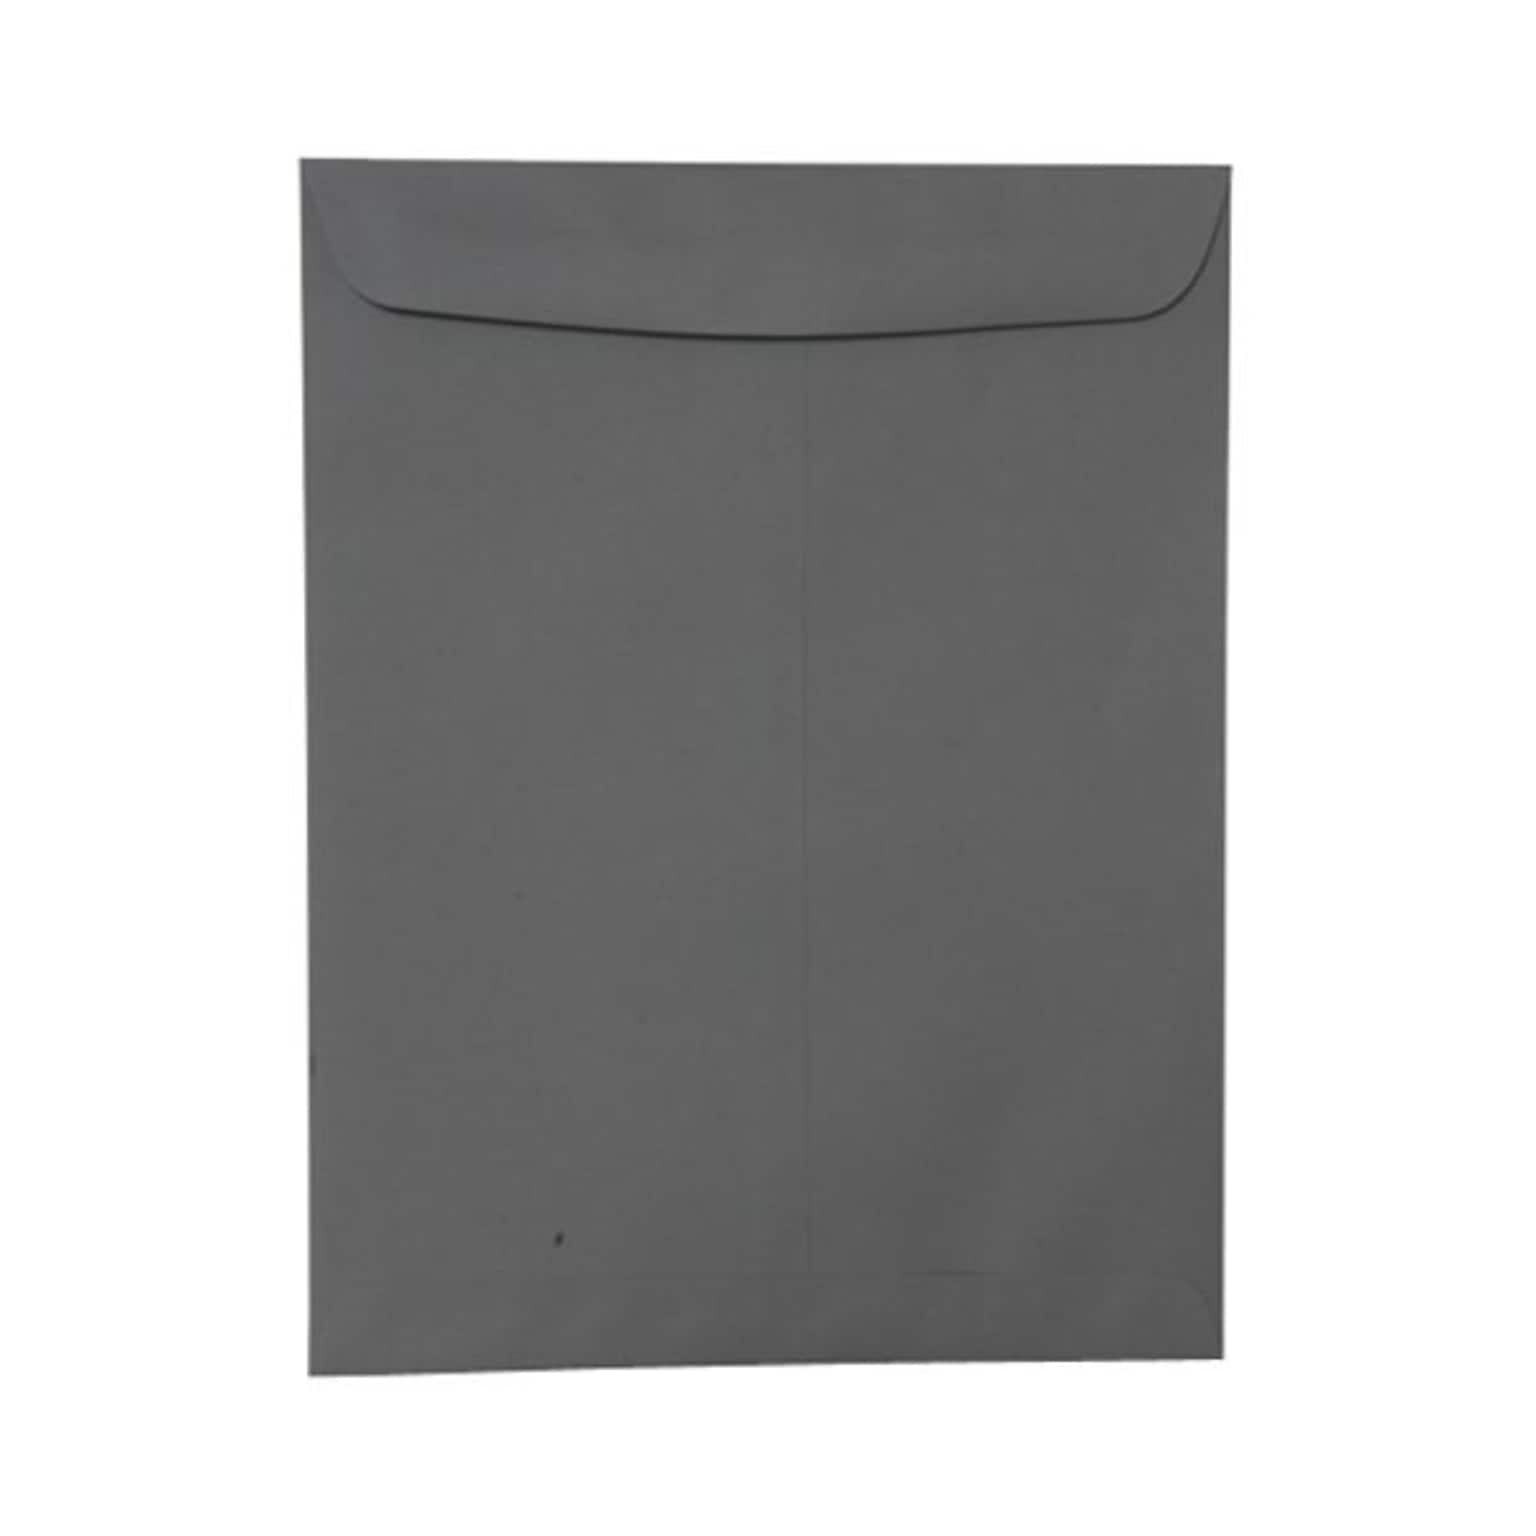 JAM Paper 10 x 13 Open End Catalog Envelopes, Dark Grey, 100/Pack (21285784)